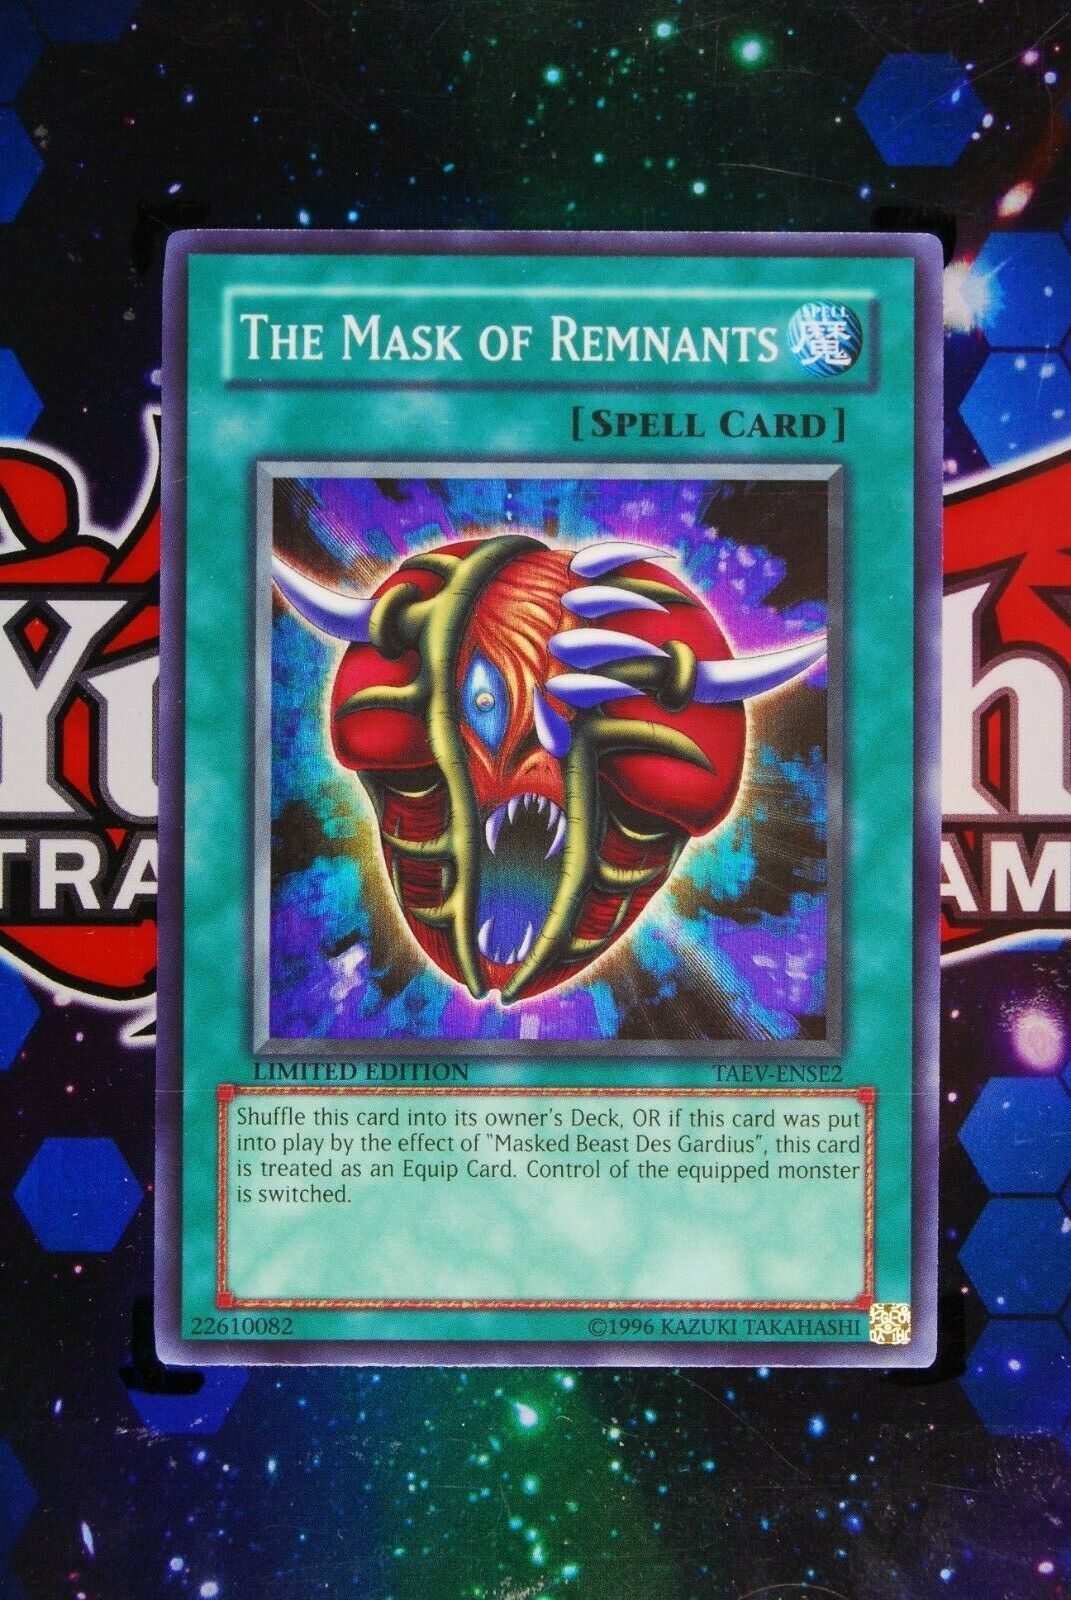 Vejrudsigt klæde Skat The Mask of Remnants TAEV-ENSE2 Super Rare Yugioh Card – THG Cards